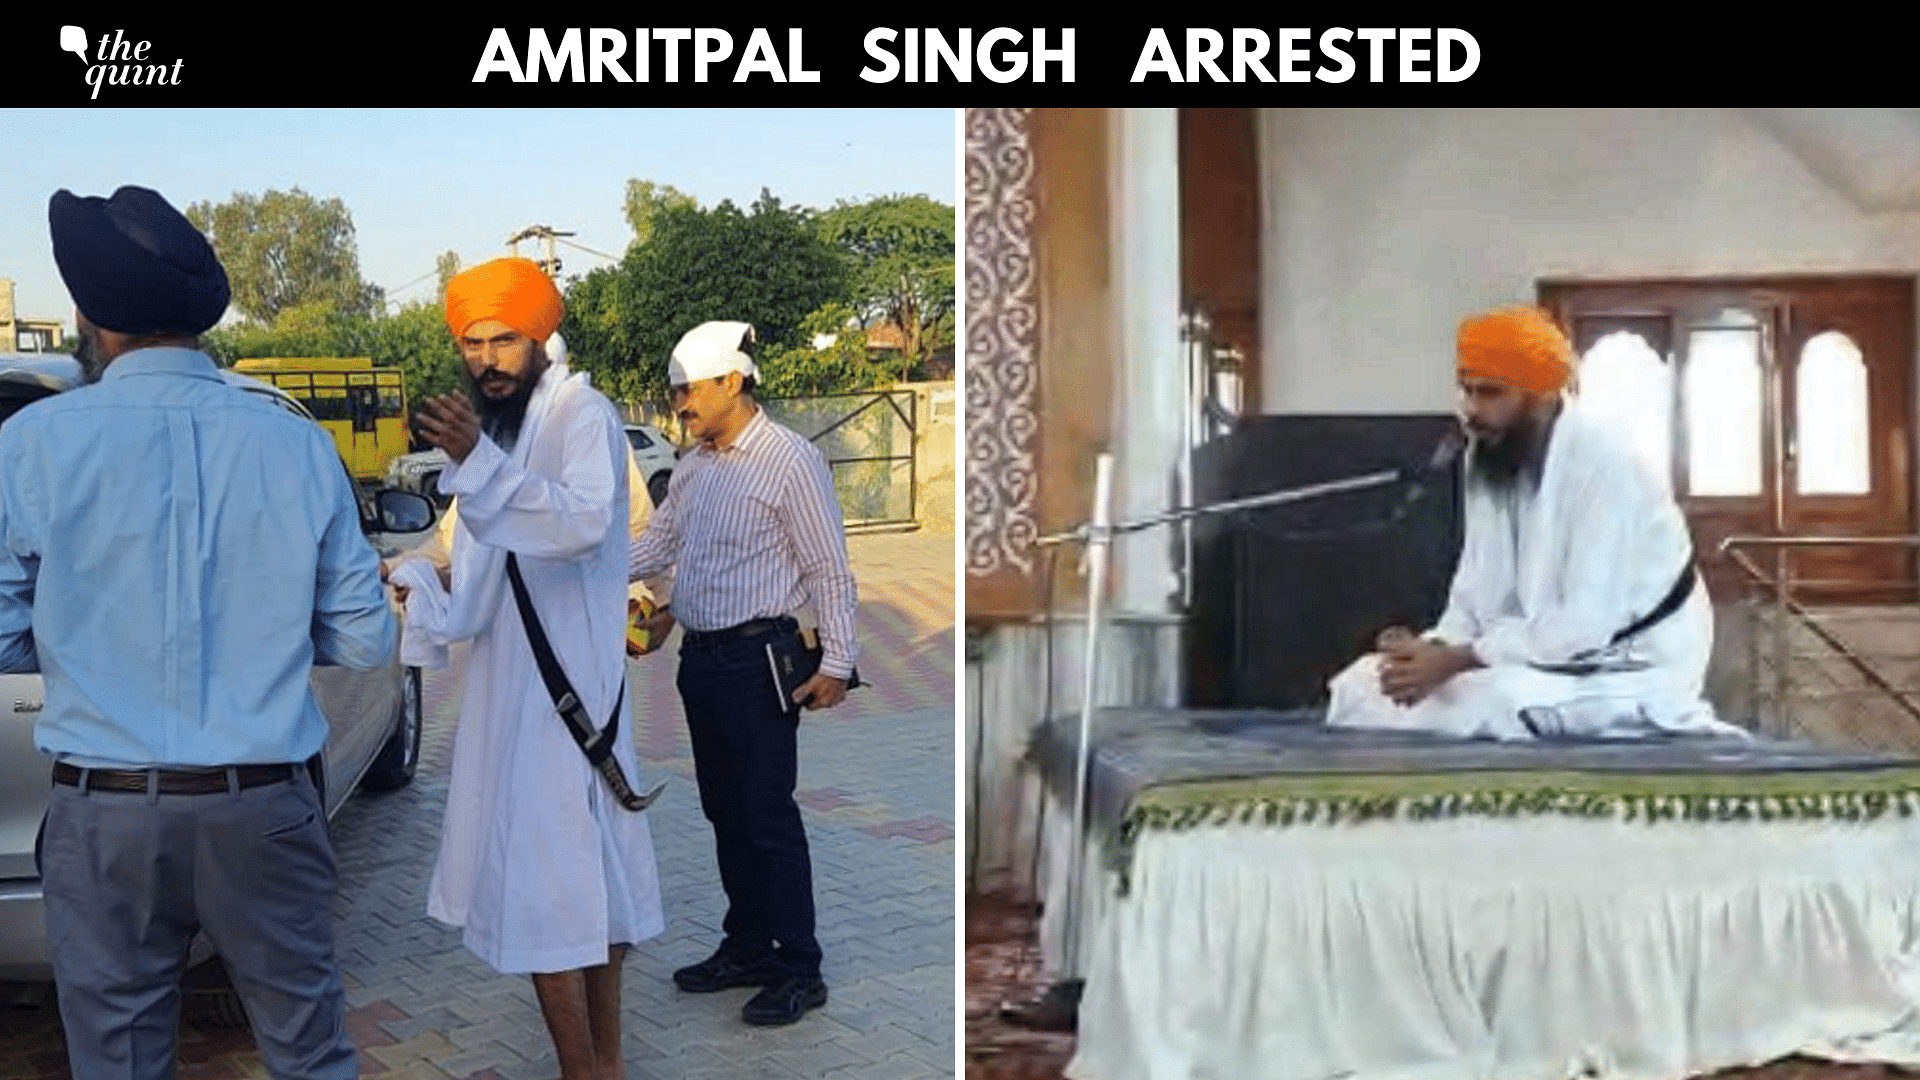 <div class="paragraphs"><p>Amritpal Singh arrest live updates</p></div>